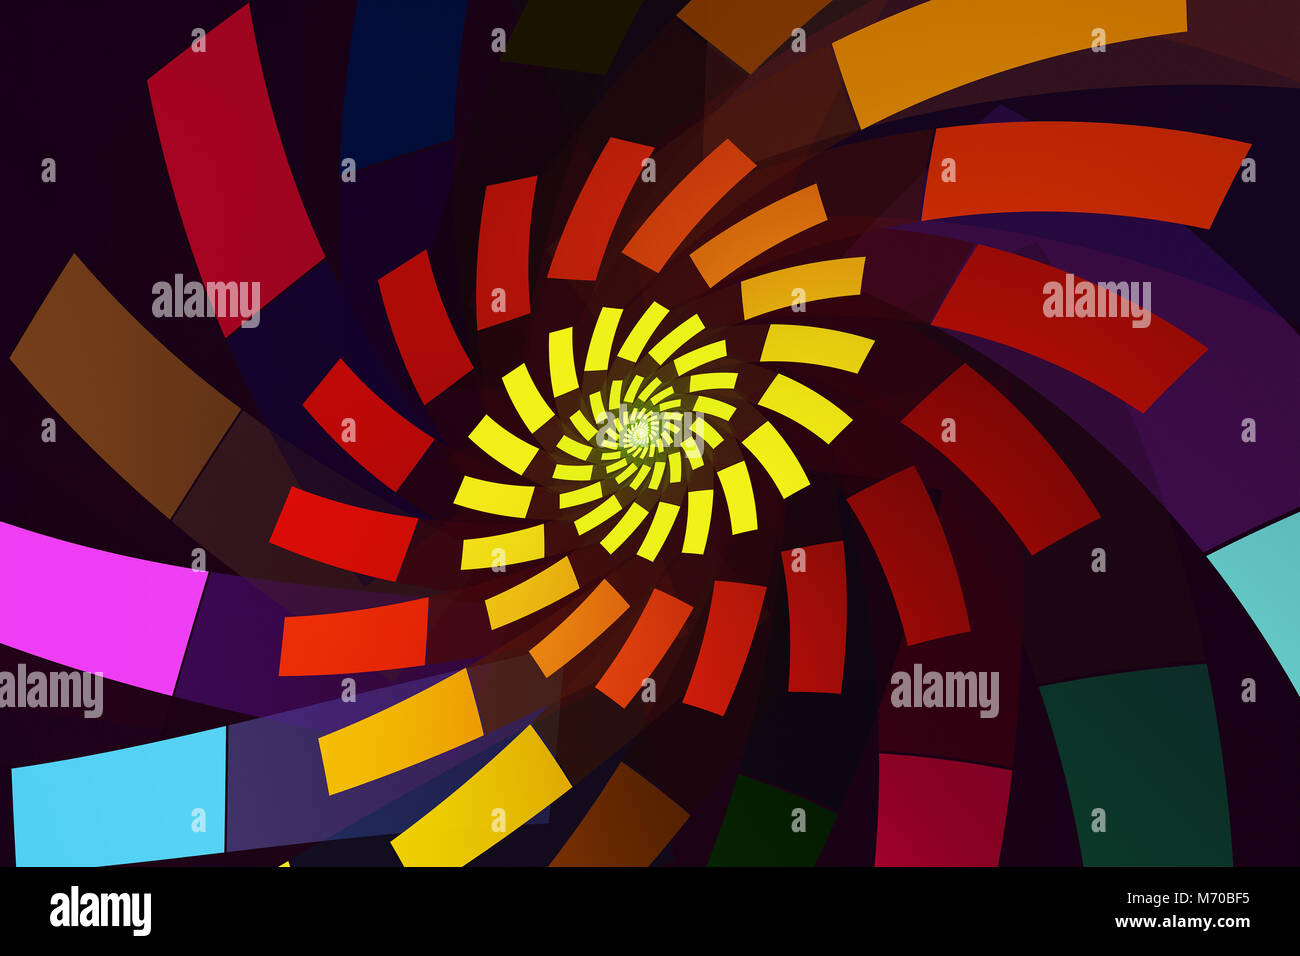 Abstract swirl fractale avec des rectangles de couleur vive la filature Banque D'Images